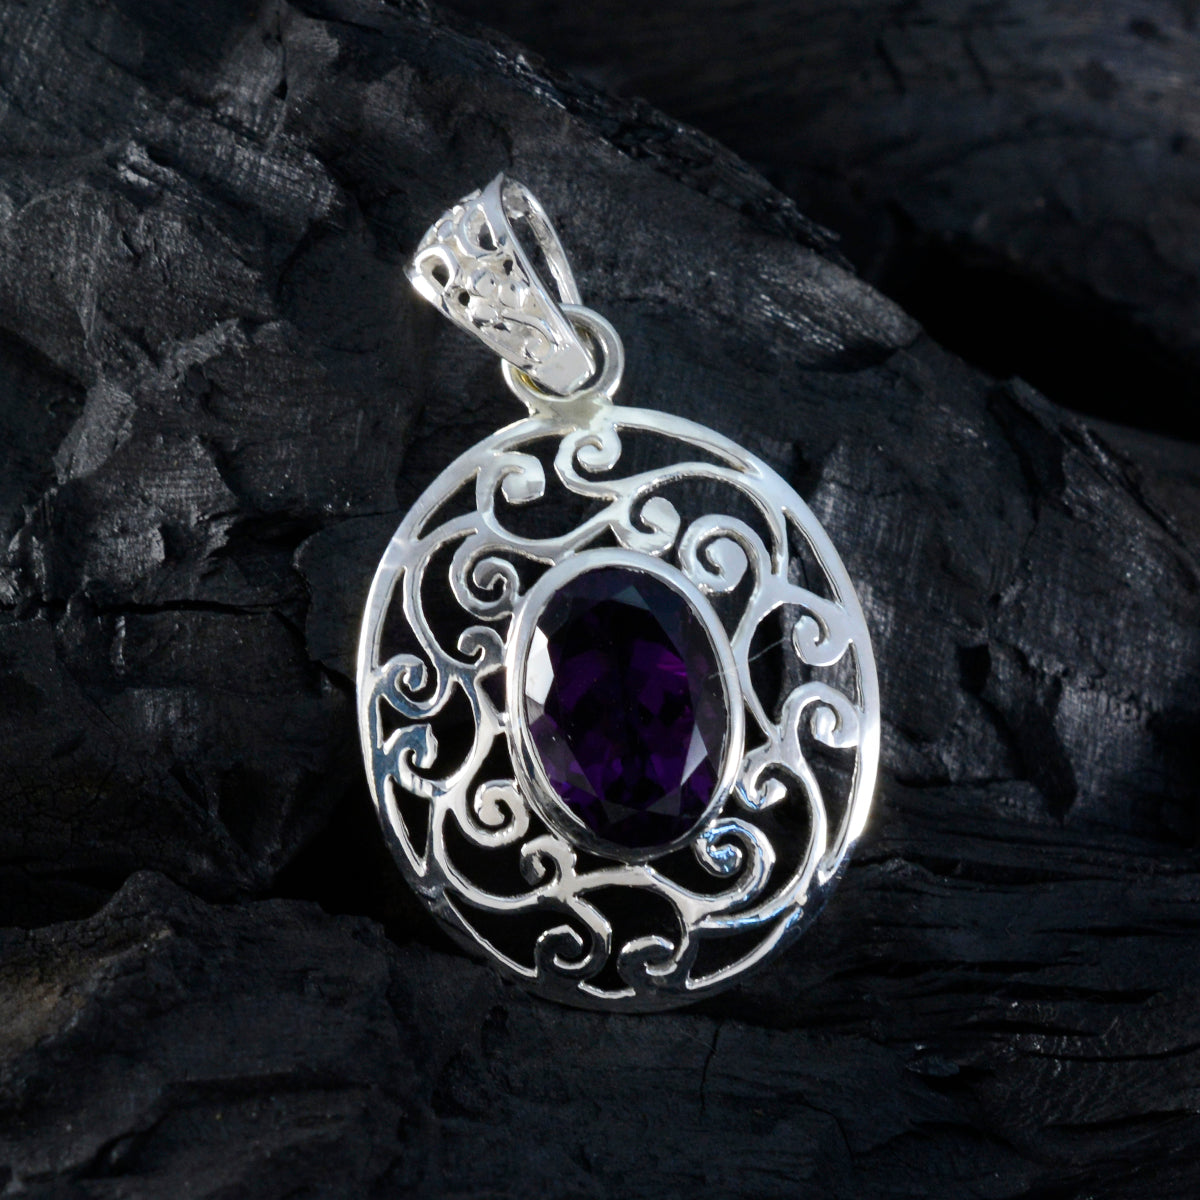 Riyo irresistible piedra preciosa ovalada facetada amatista púrpura colgante de plata de ley regalo para un amigo